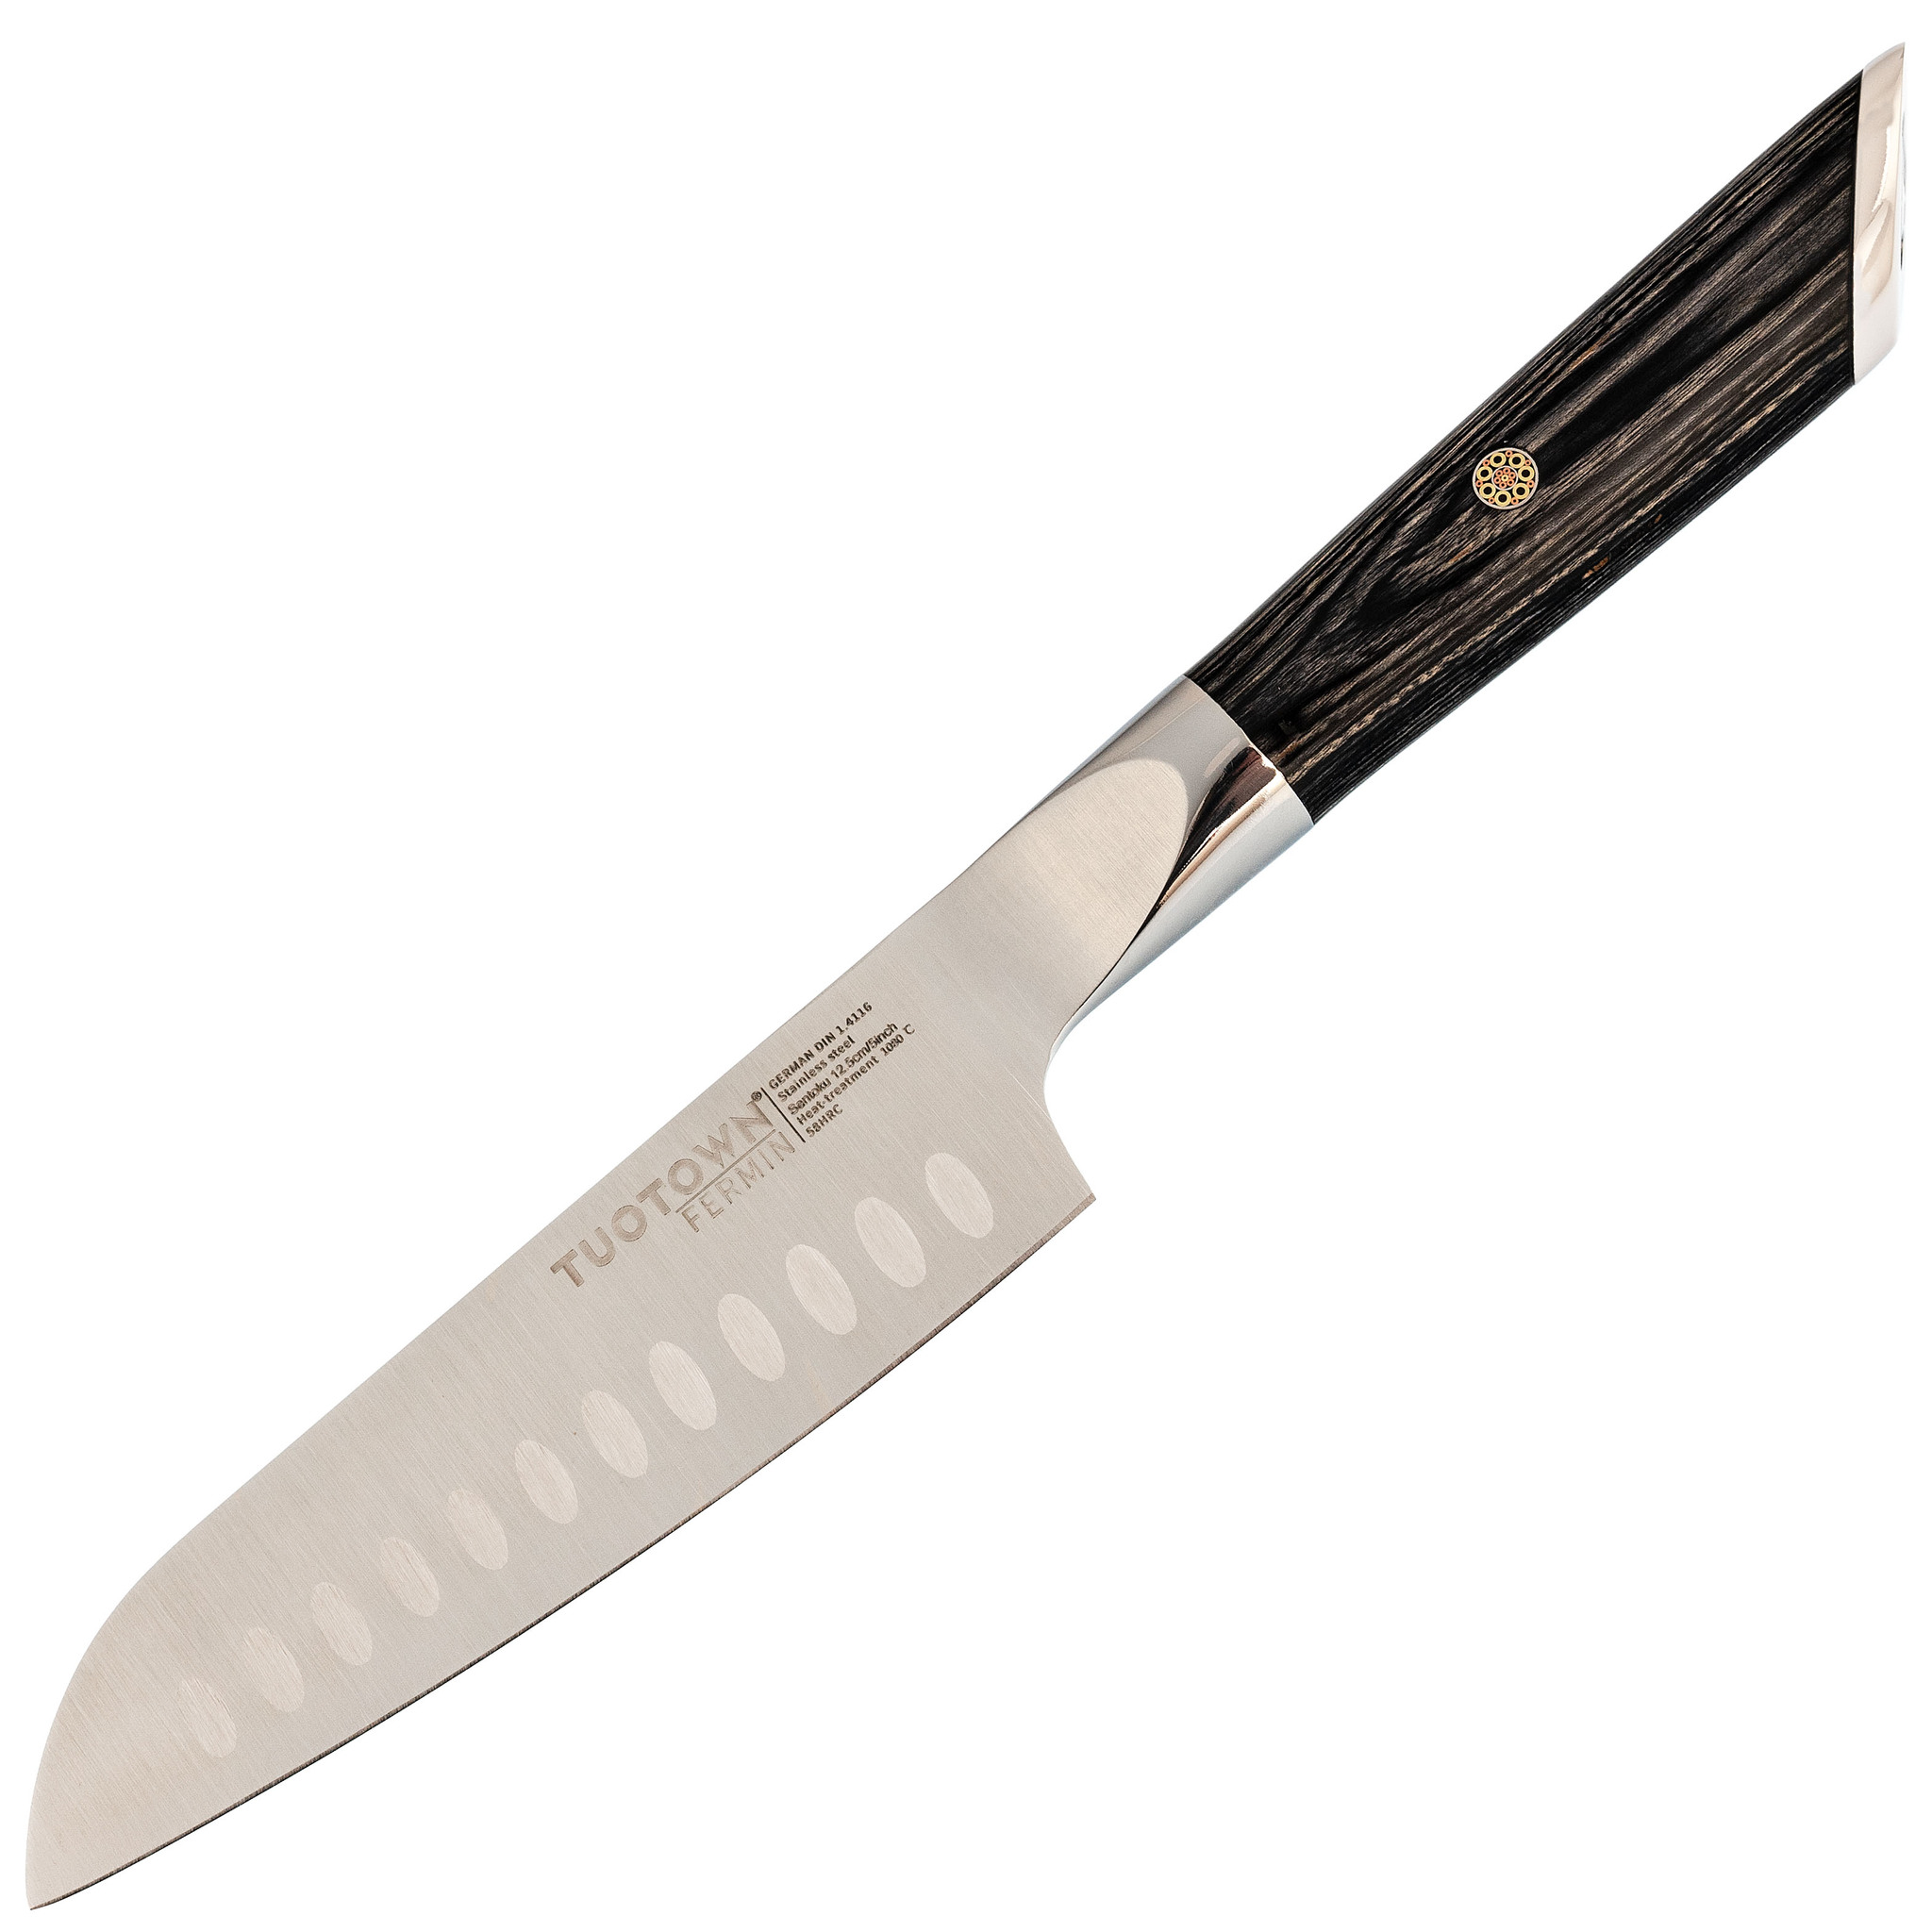 фото Кухонный нож сантоку, tuotown серия fermin, сталь 1.4116